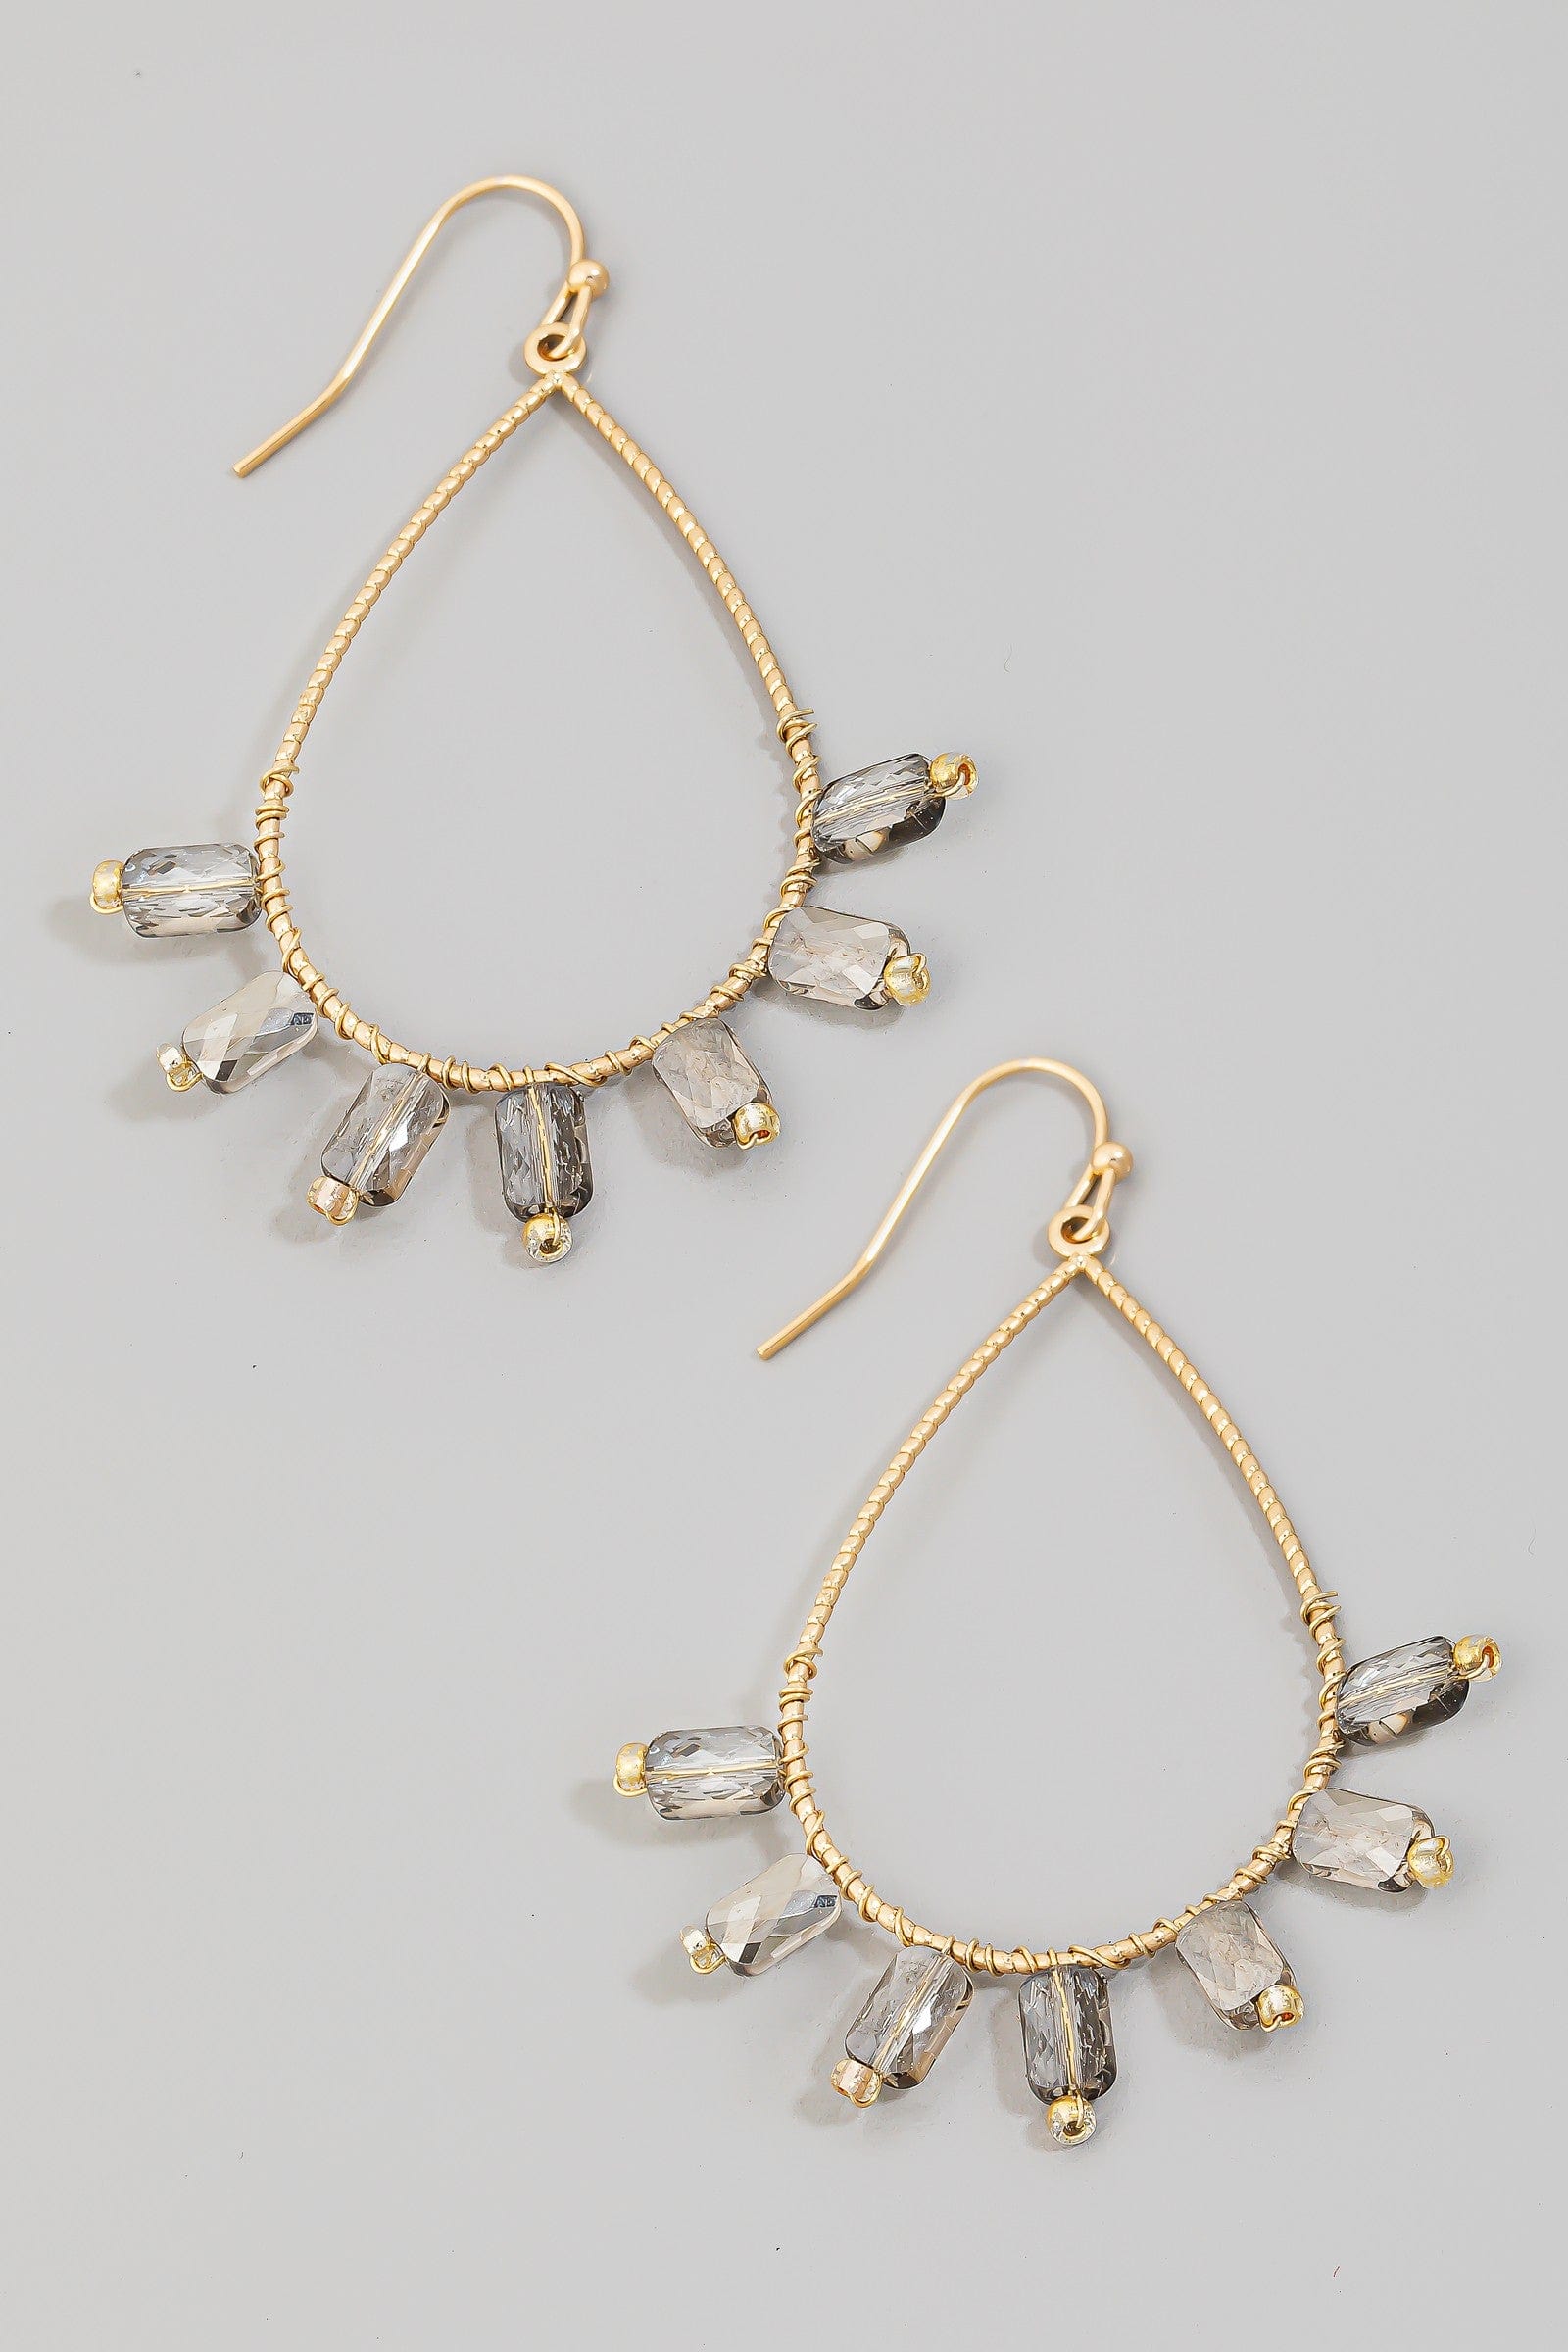 fame accessories Jewelry - Earrings Rhinestone Beaded Tear Dangle Earring In Grey